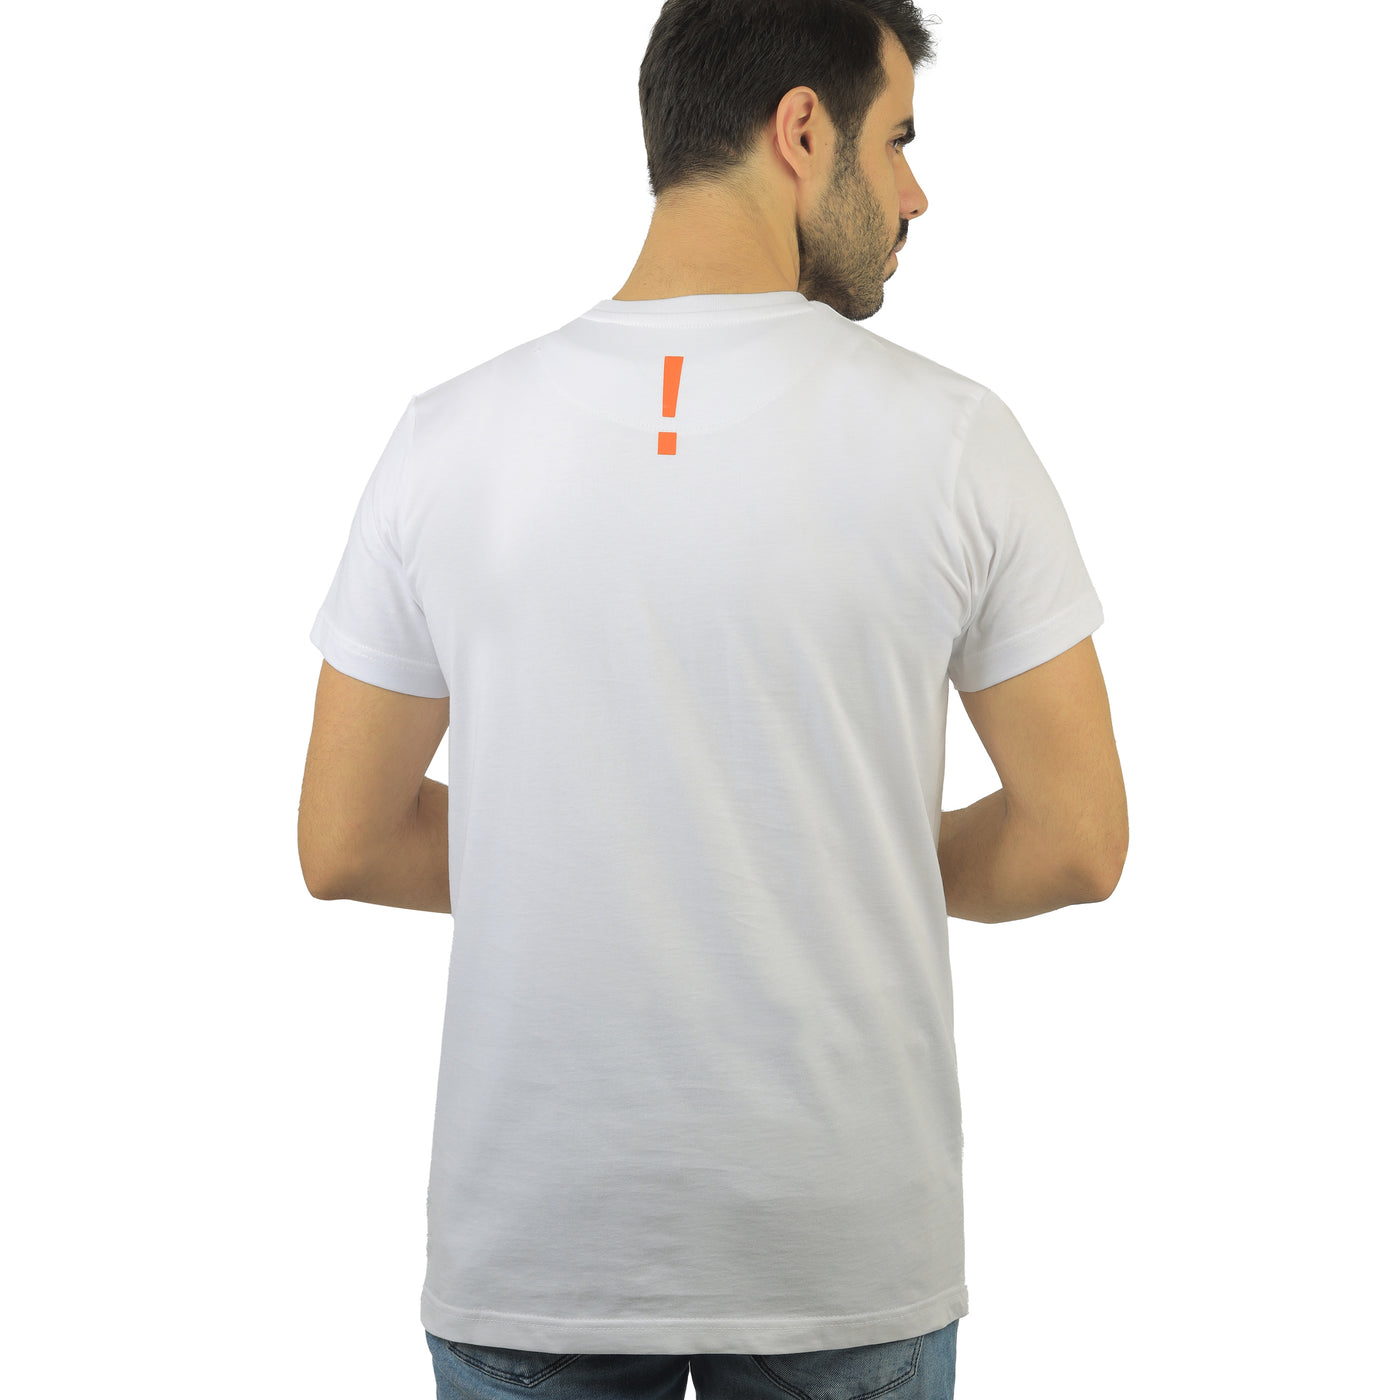 White round T-shirt